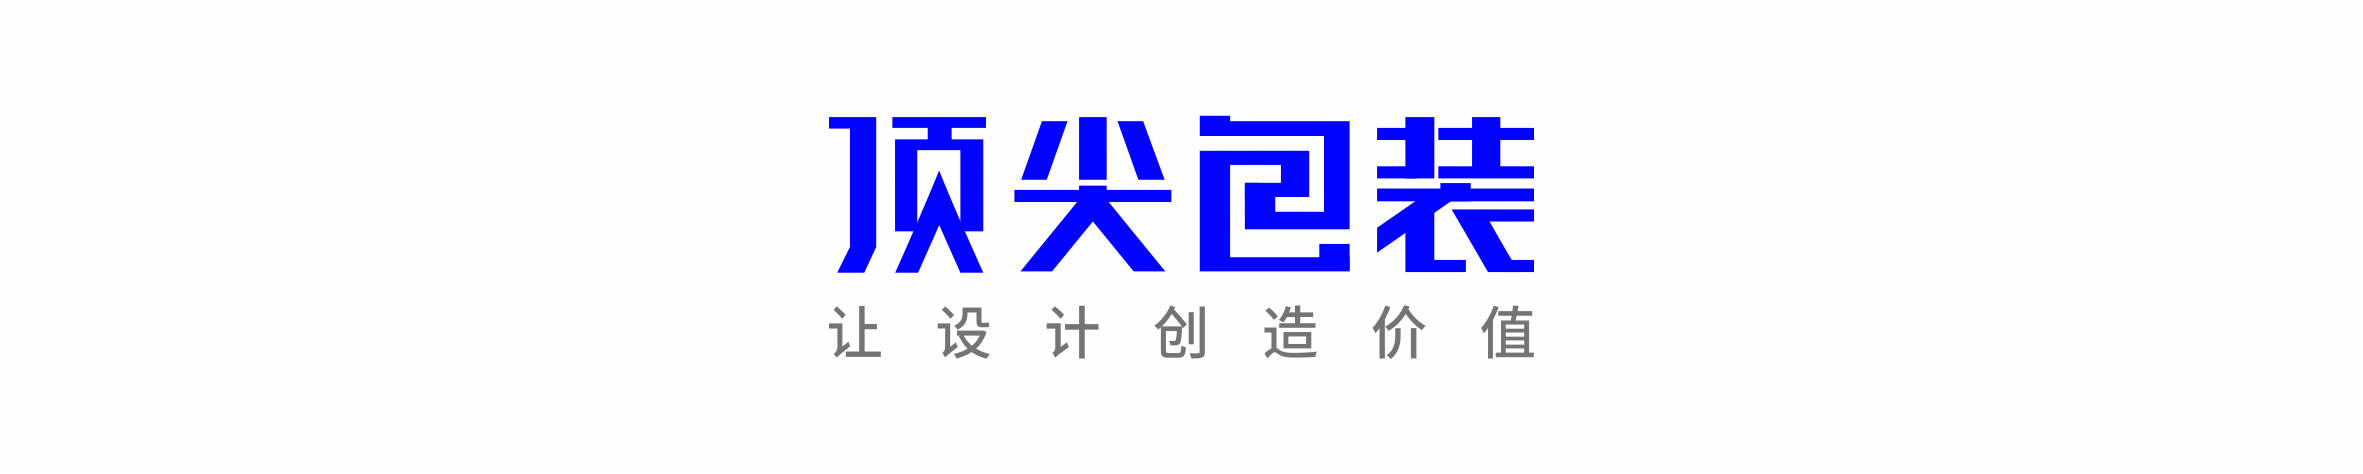 稻香村2019年中秋月饼包装设计(图1)